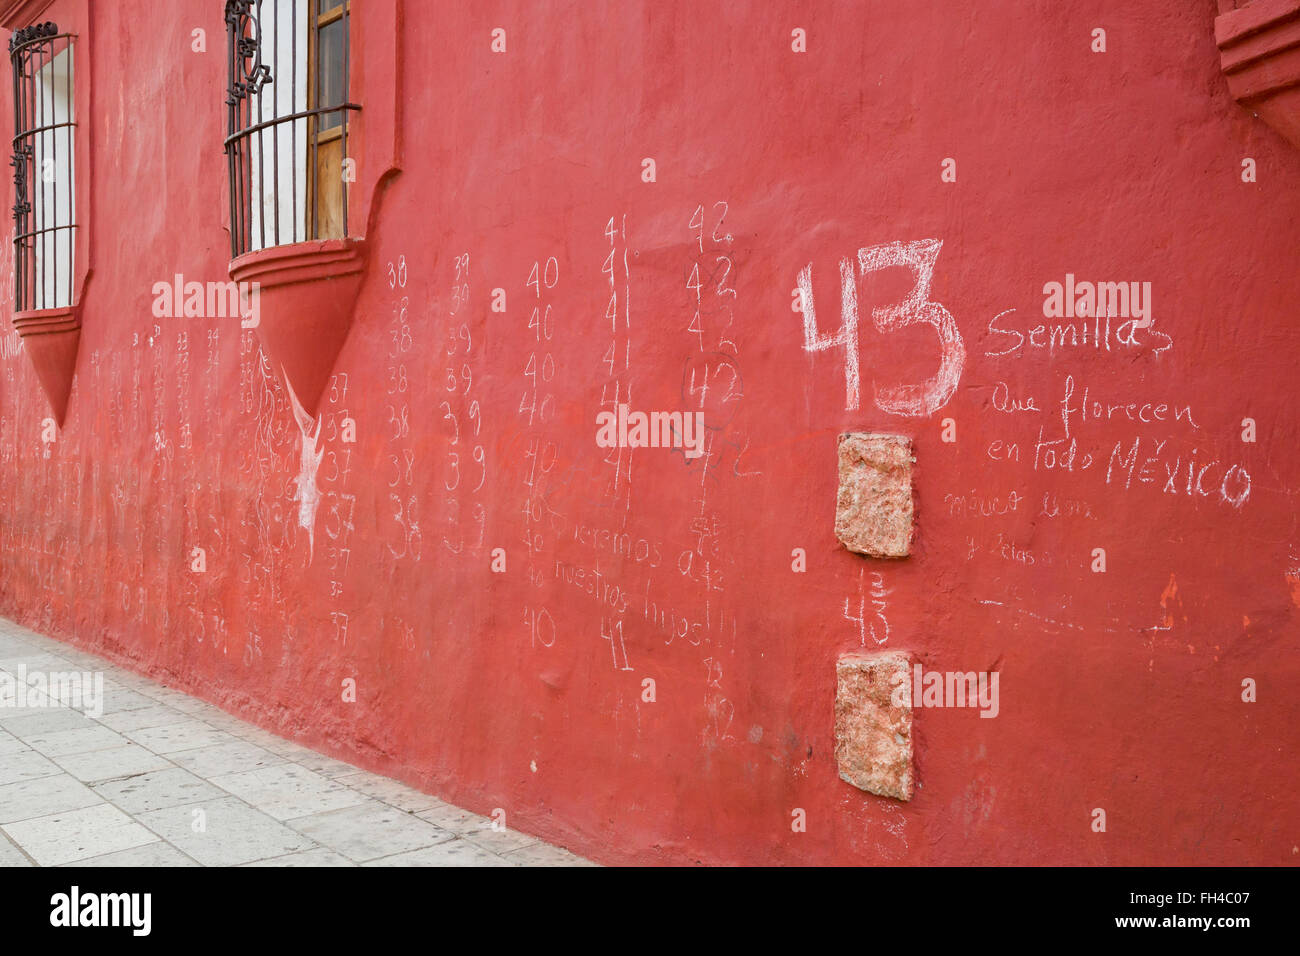 Oaxaca, Mexiko - Graffiti an der Wand, erinnert sich die 43 unterrichten von Schülern, die entführt und offenbar ermordet wurden. Stockfoto